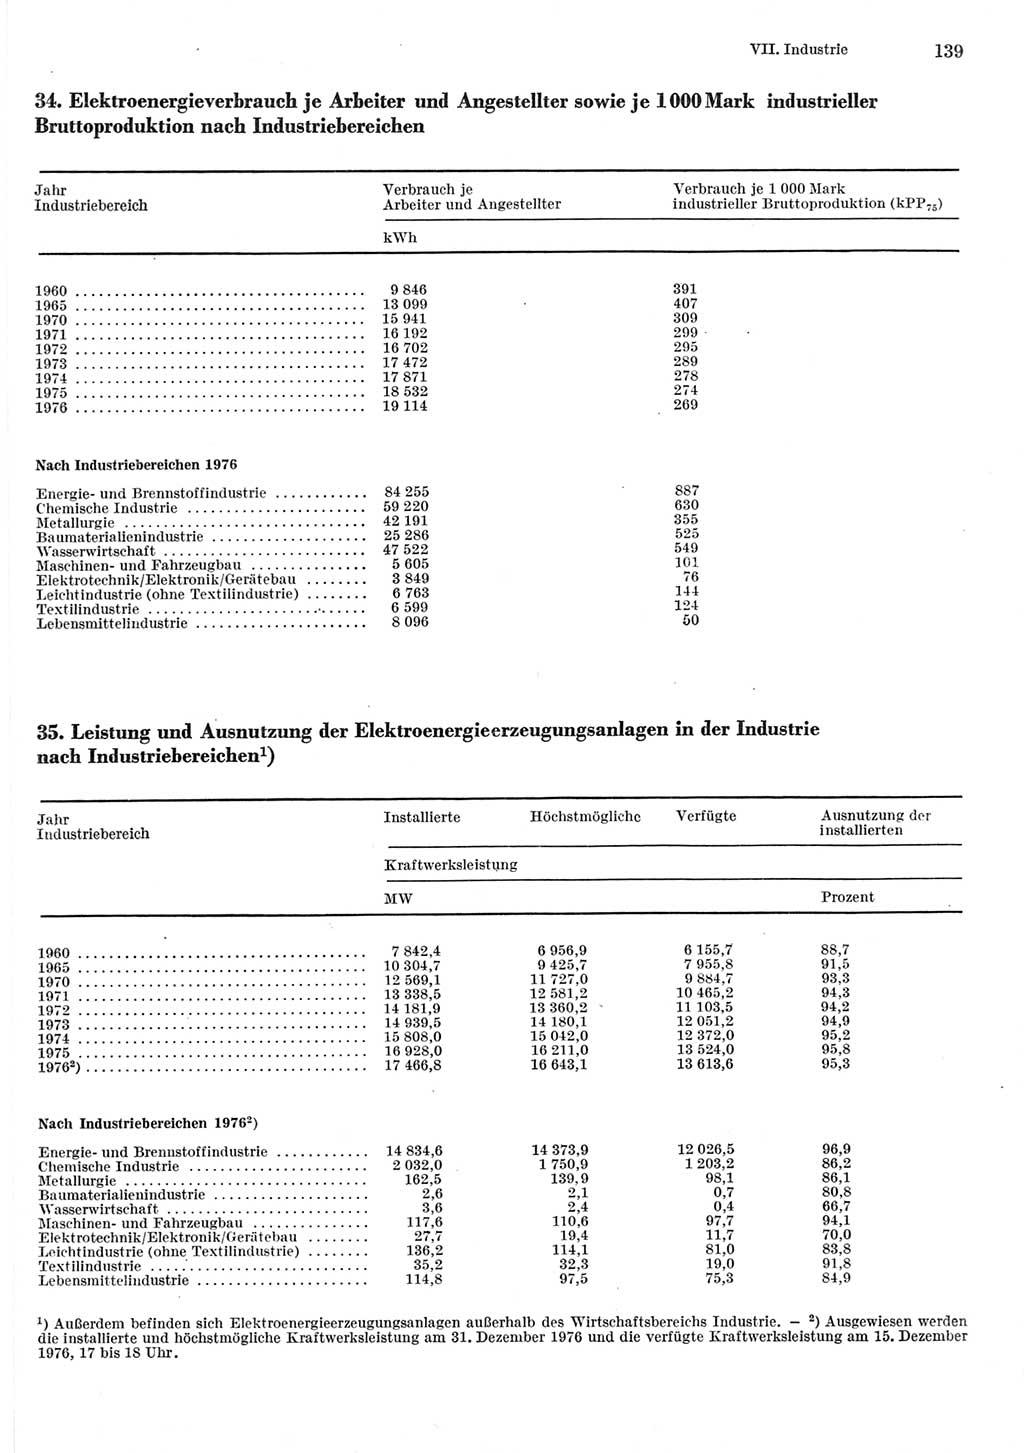 Statistisches Jahrbuch der Deutschen Demokratischen Republik (DDR) 1977, Seite 139 (Stat. Jb. DDR 1977, S. 139)